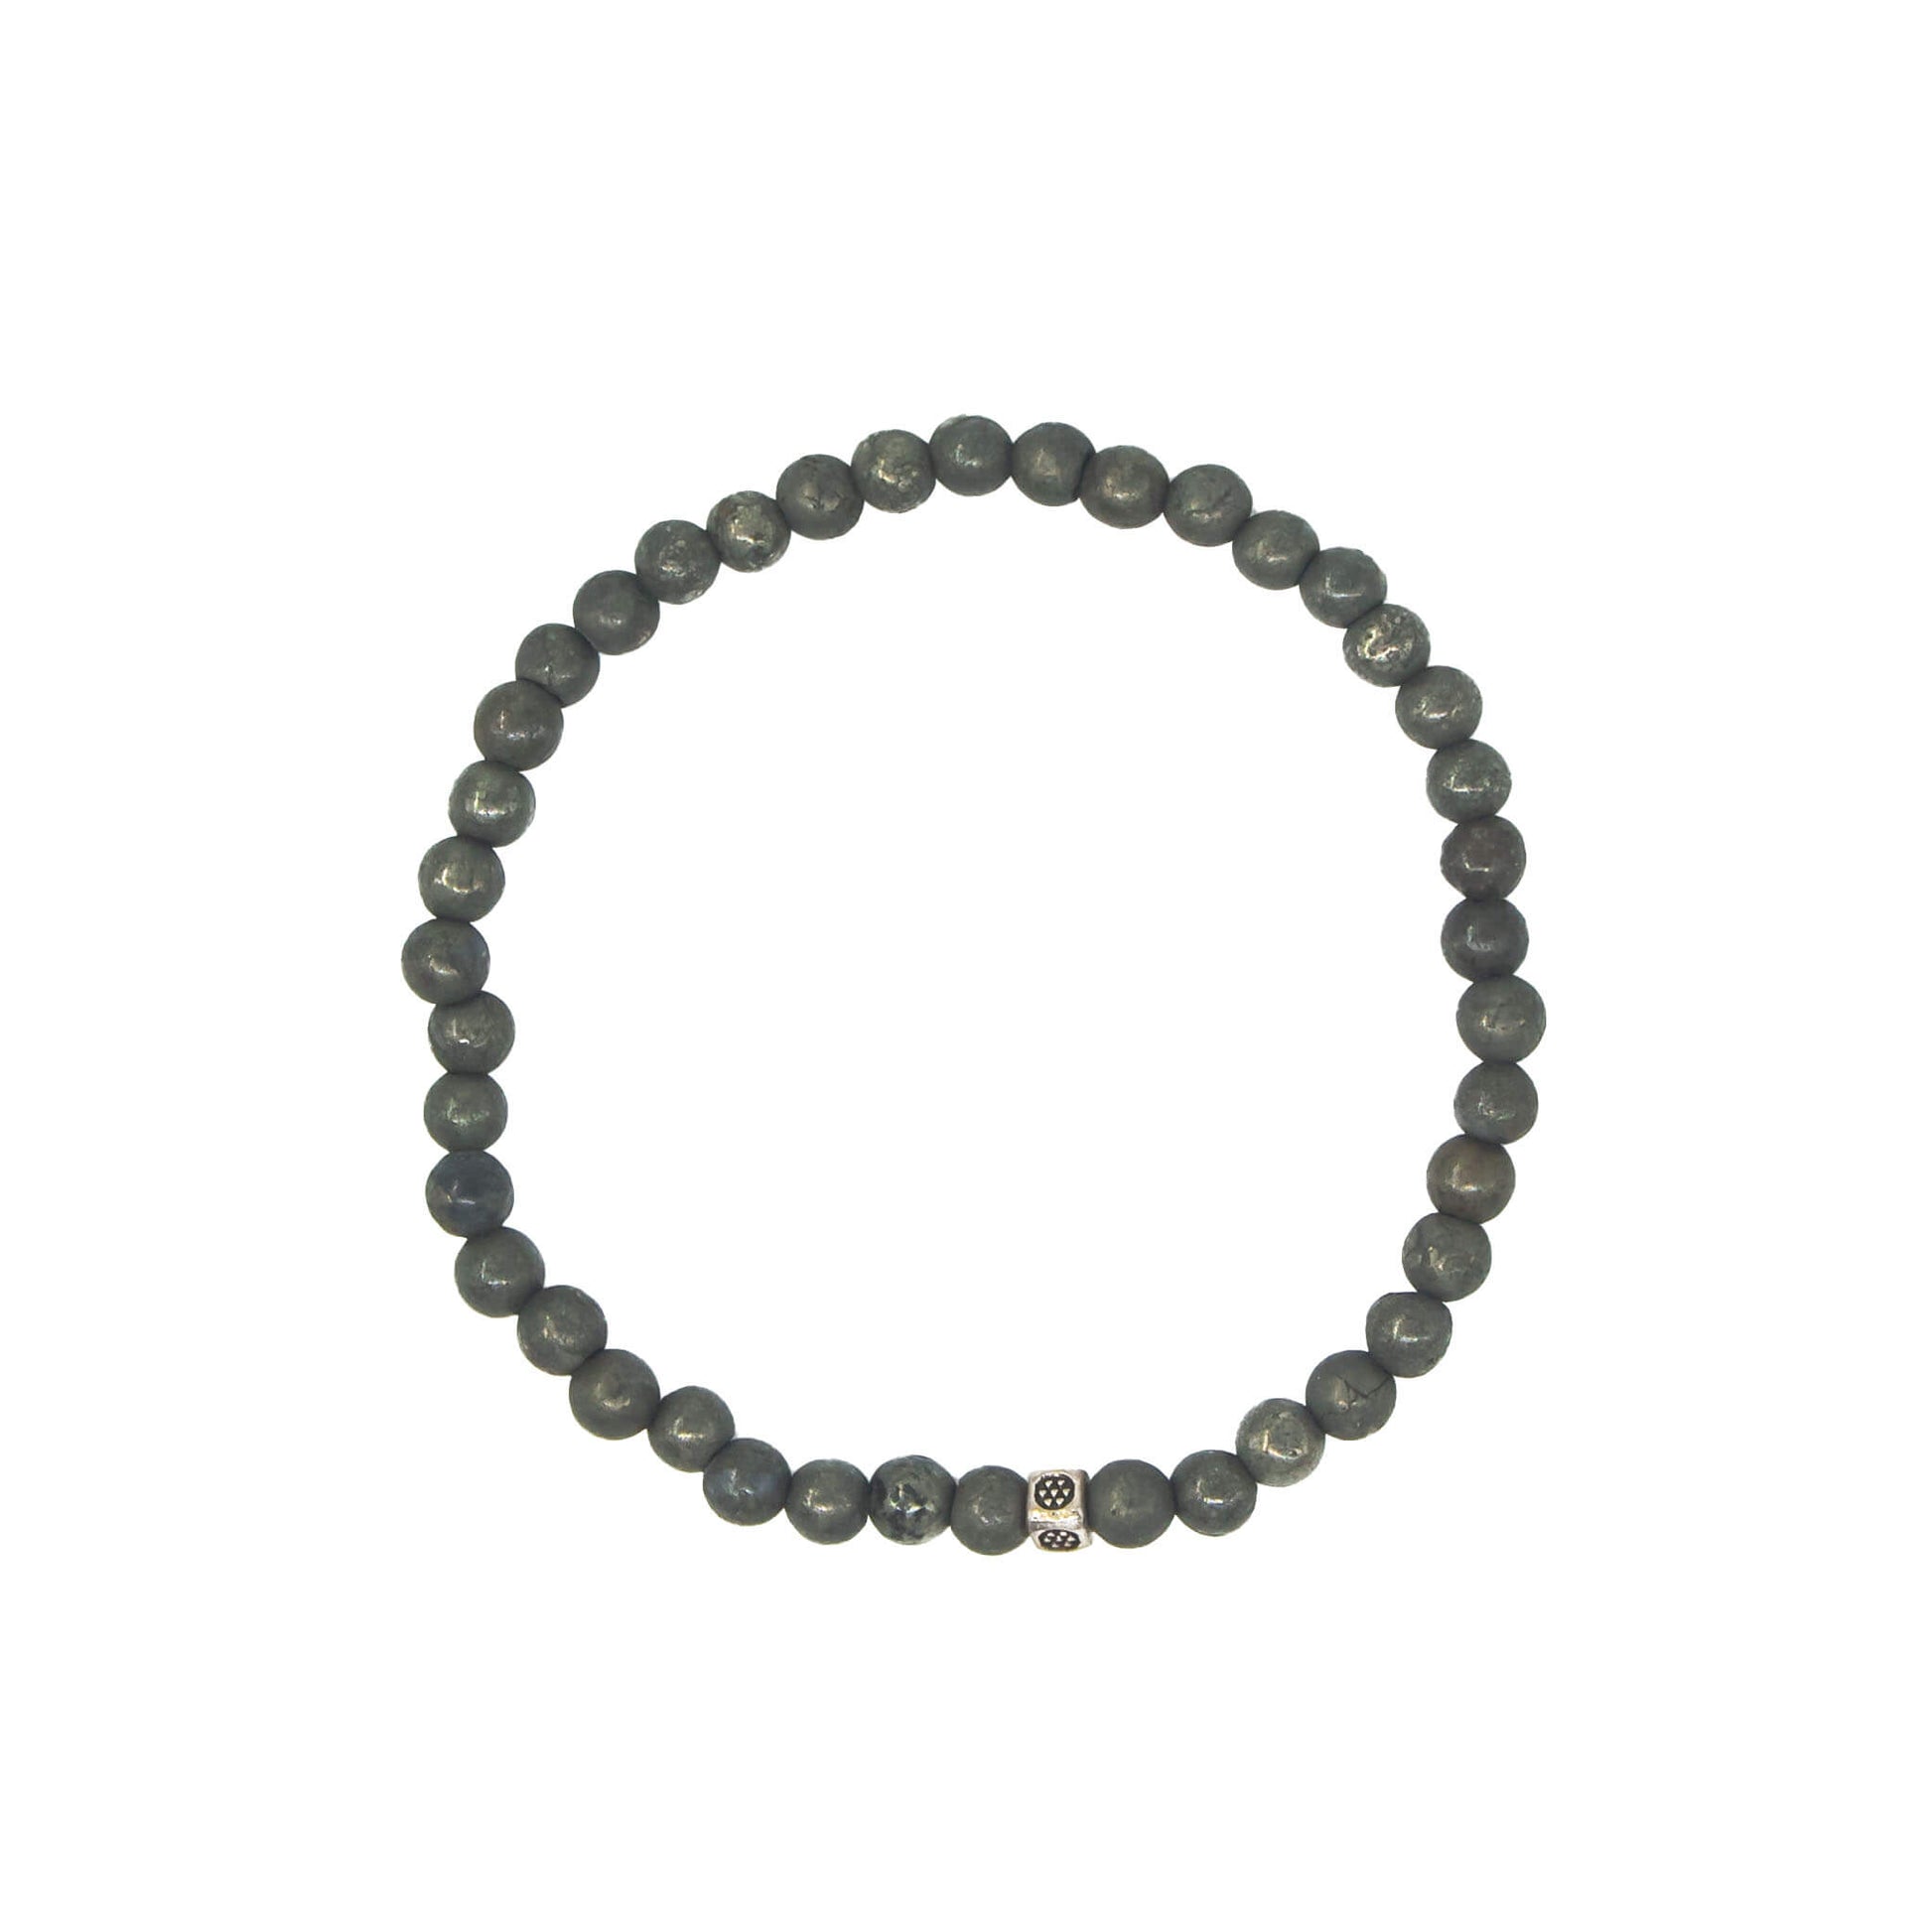 4mm pyrite crystal bracelet